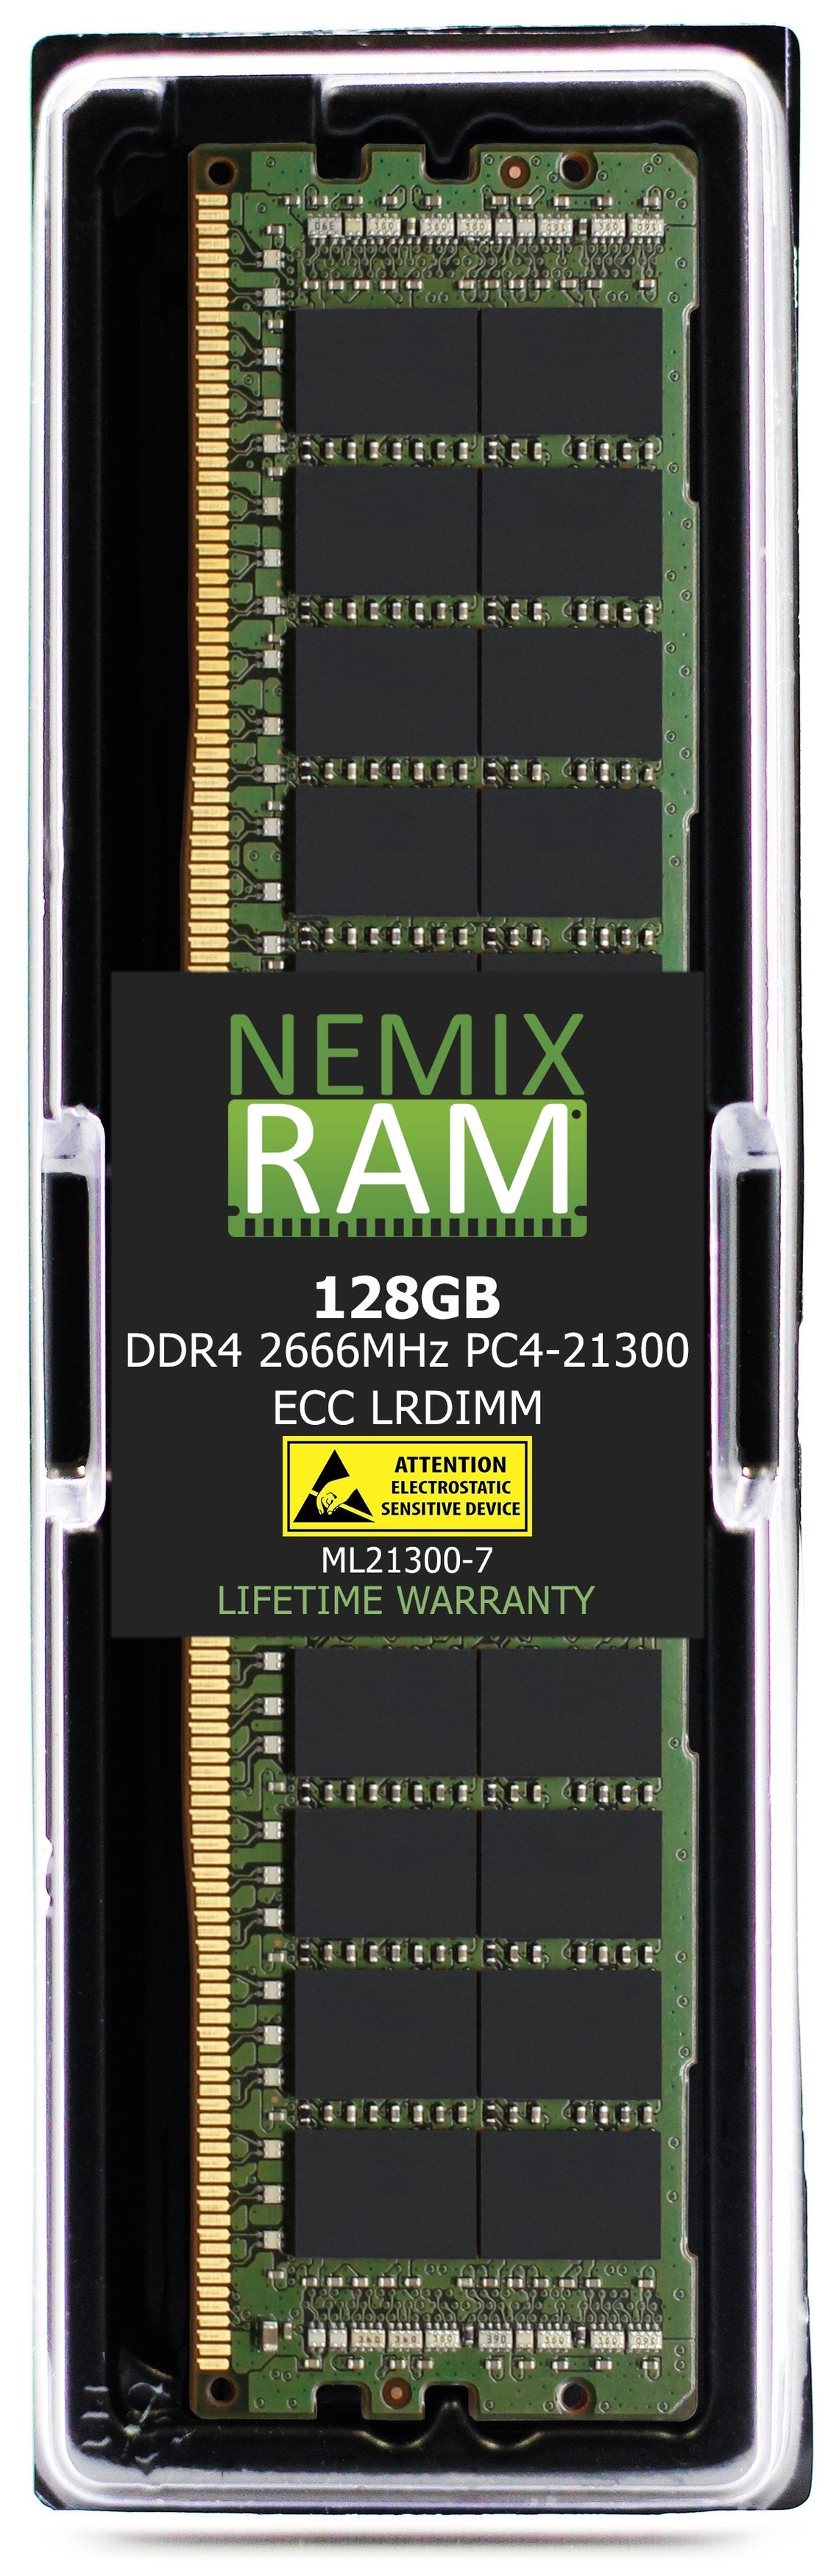 128GB DDR4 2666MHZ PC4-21300 LRDIMM Compatible with Supermicro MEM-DR412L-SL02-LR26